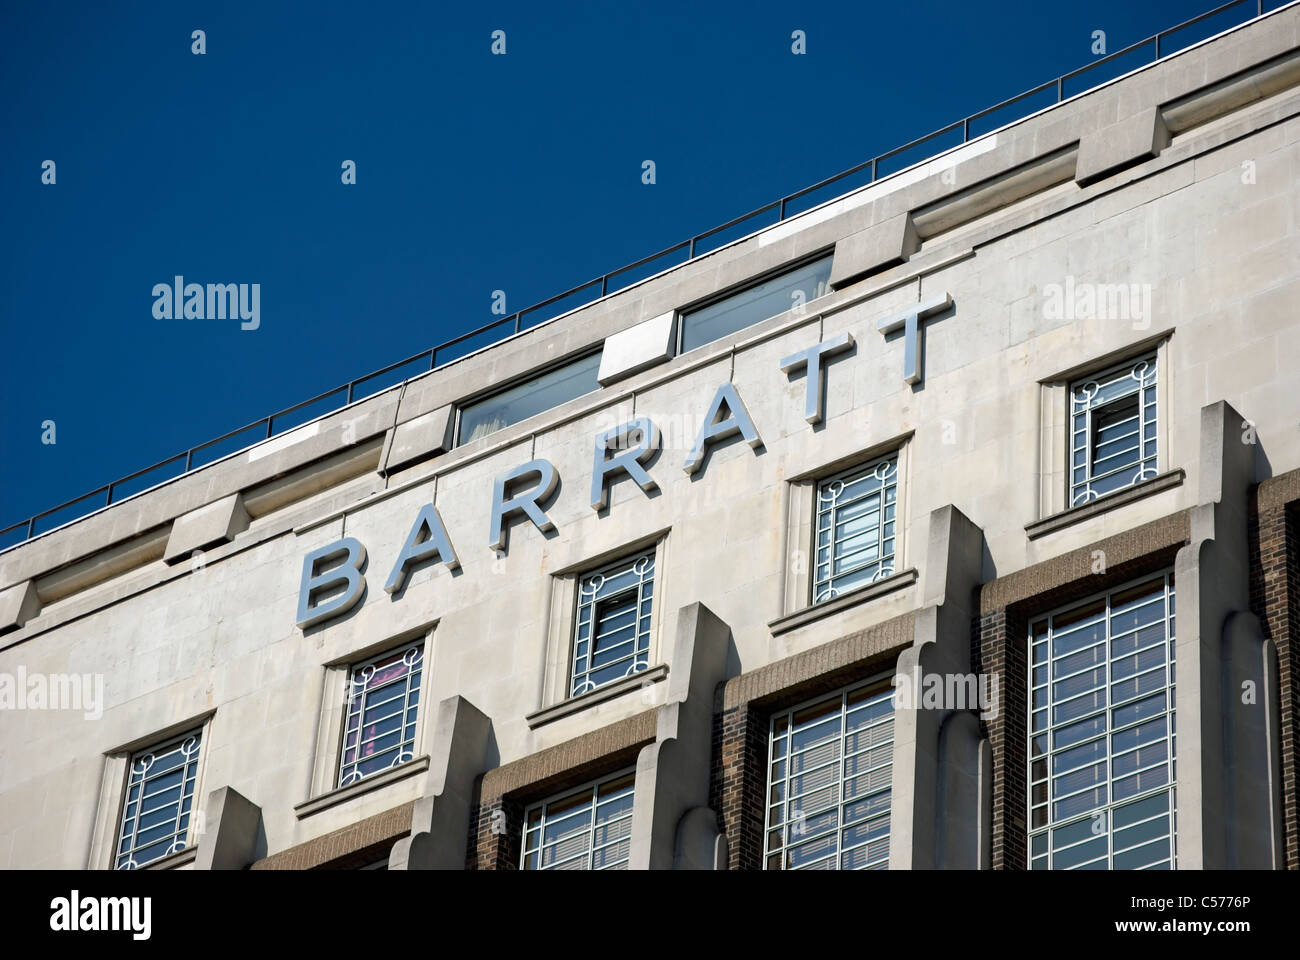 Barratt logo sur les années 1930 wallis chambre, une partie de l'ancien bâtiment beechams sur la Great West Road, Brentford, Londres, Angleterre Banque D'Images